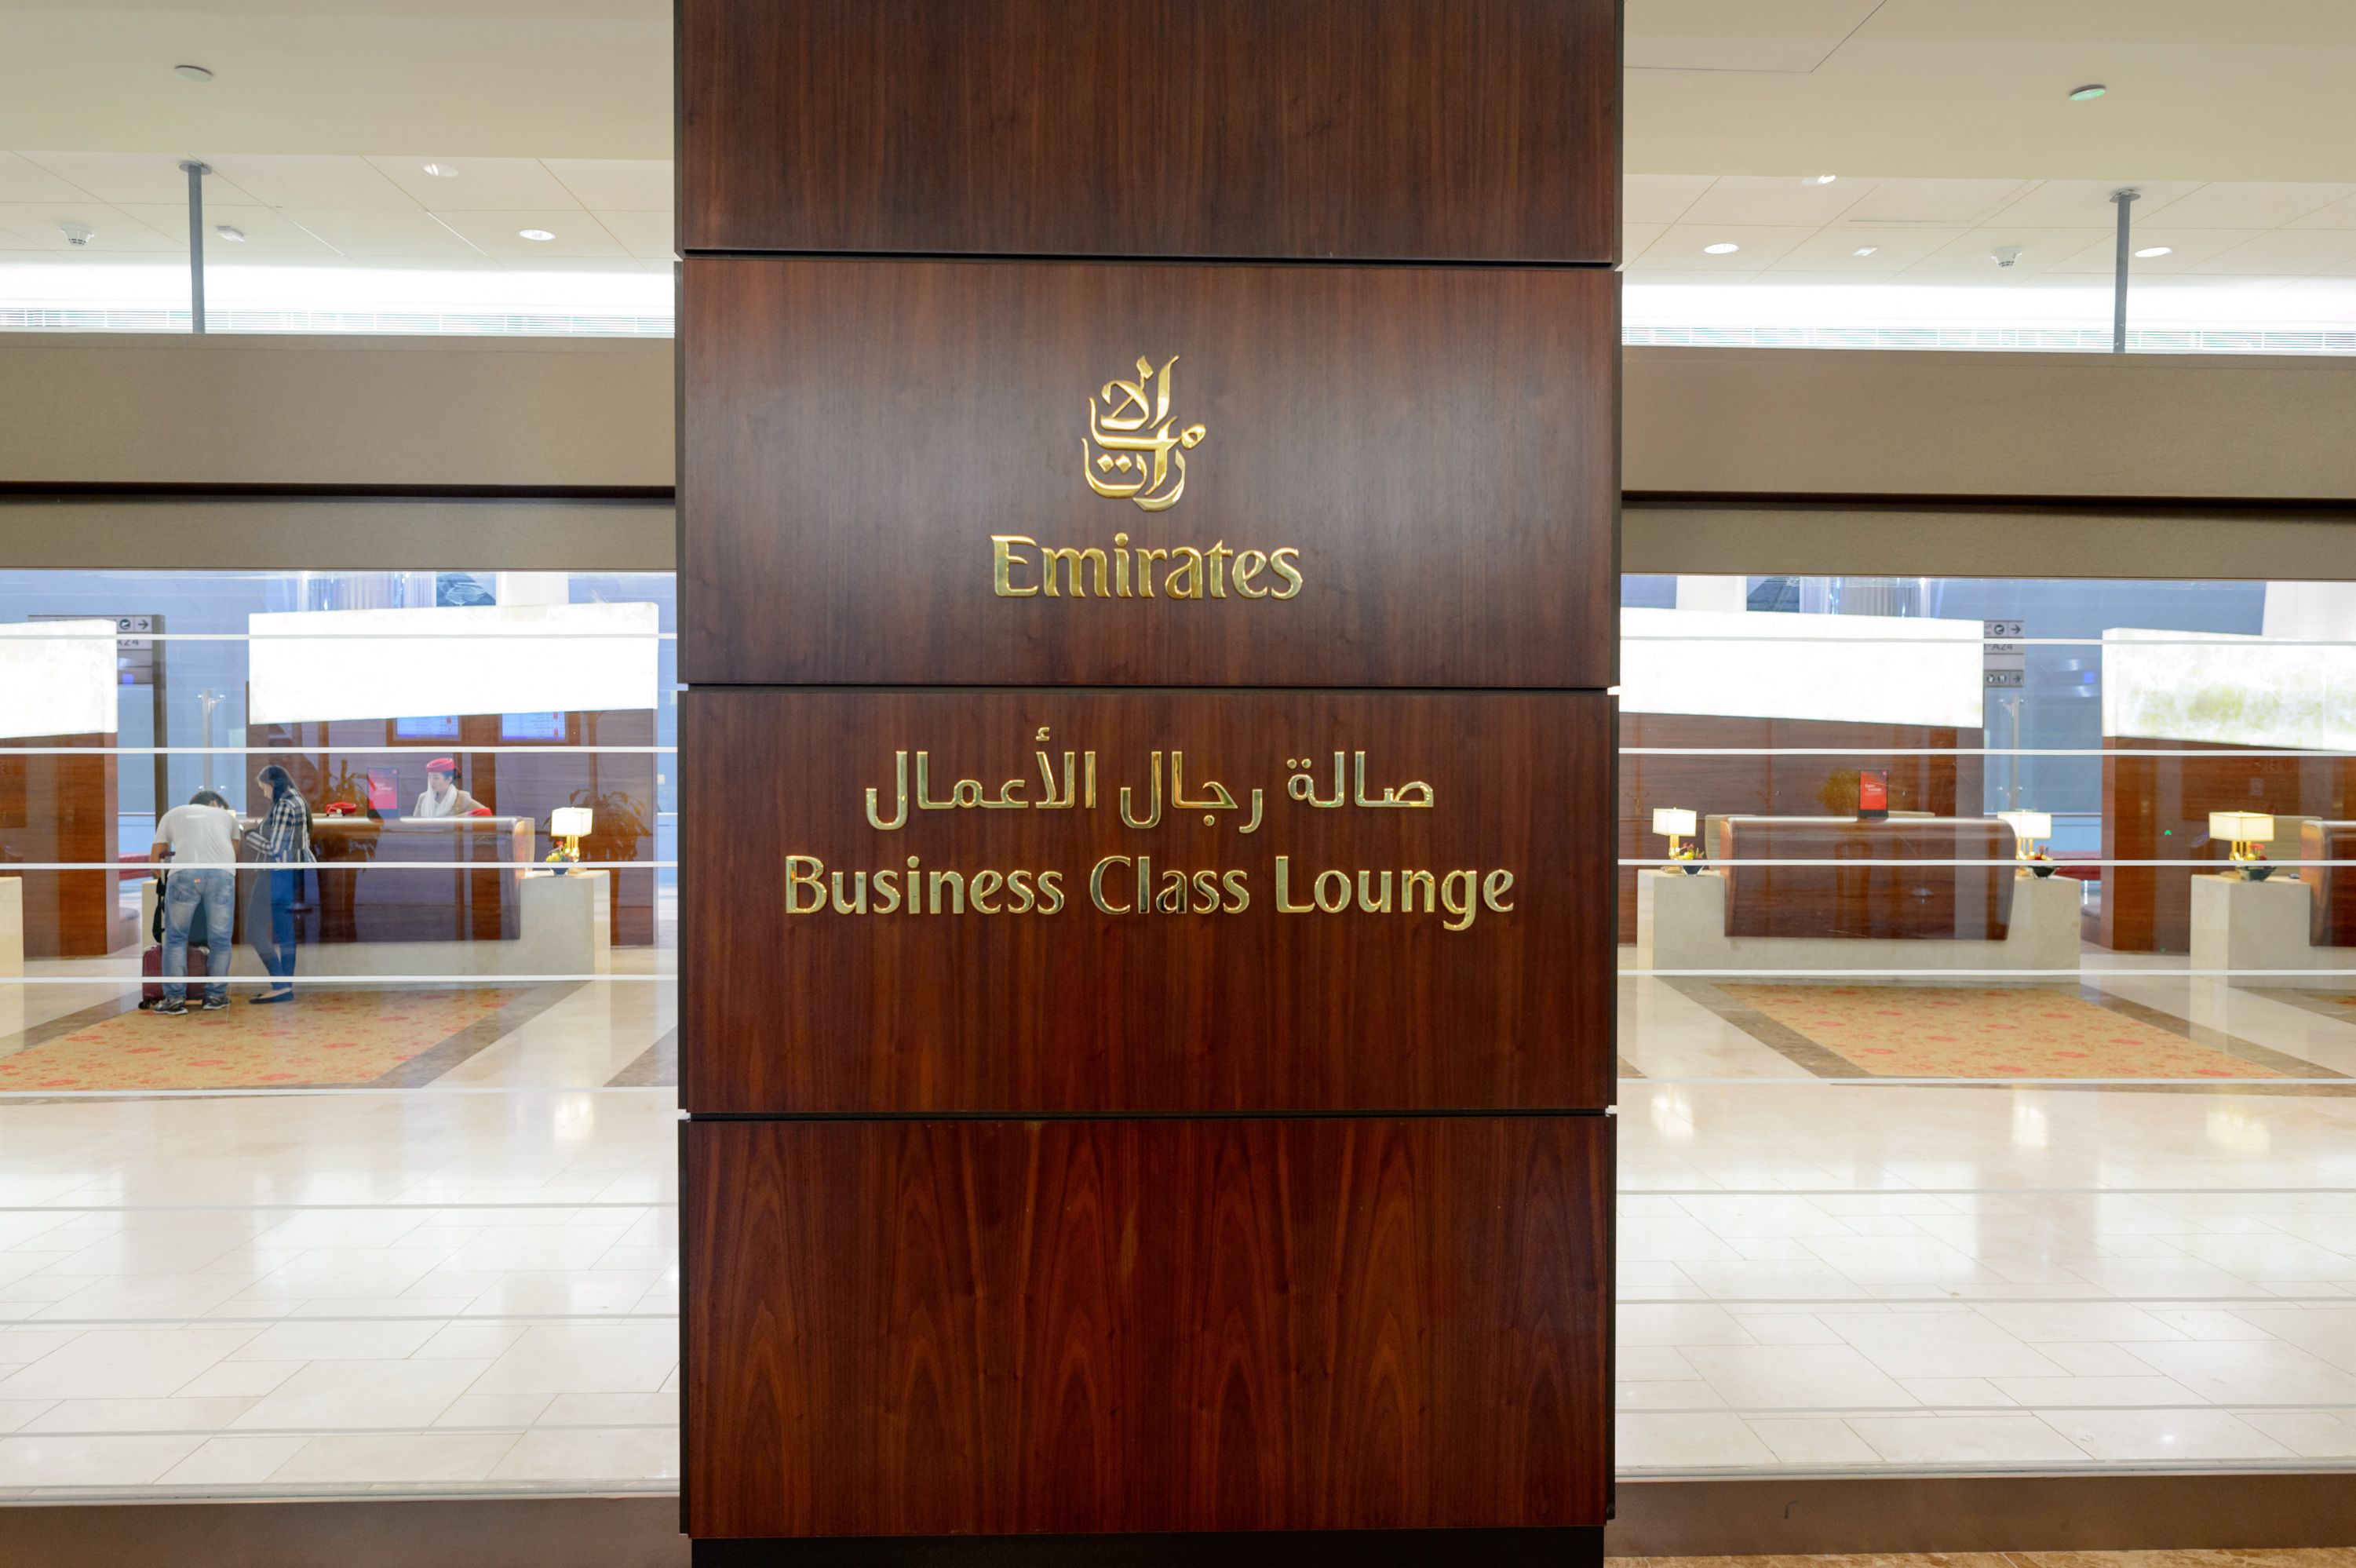 Outside the Emirates Business Class Lounge Dubai.